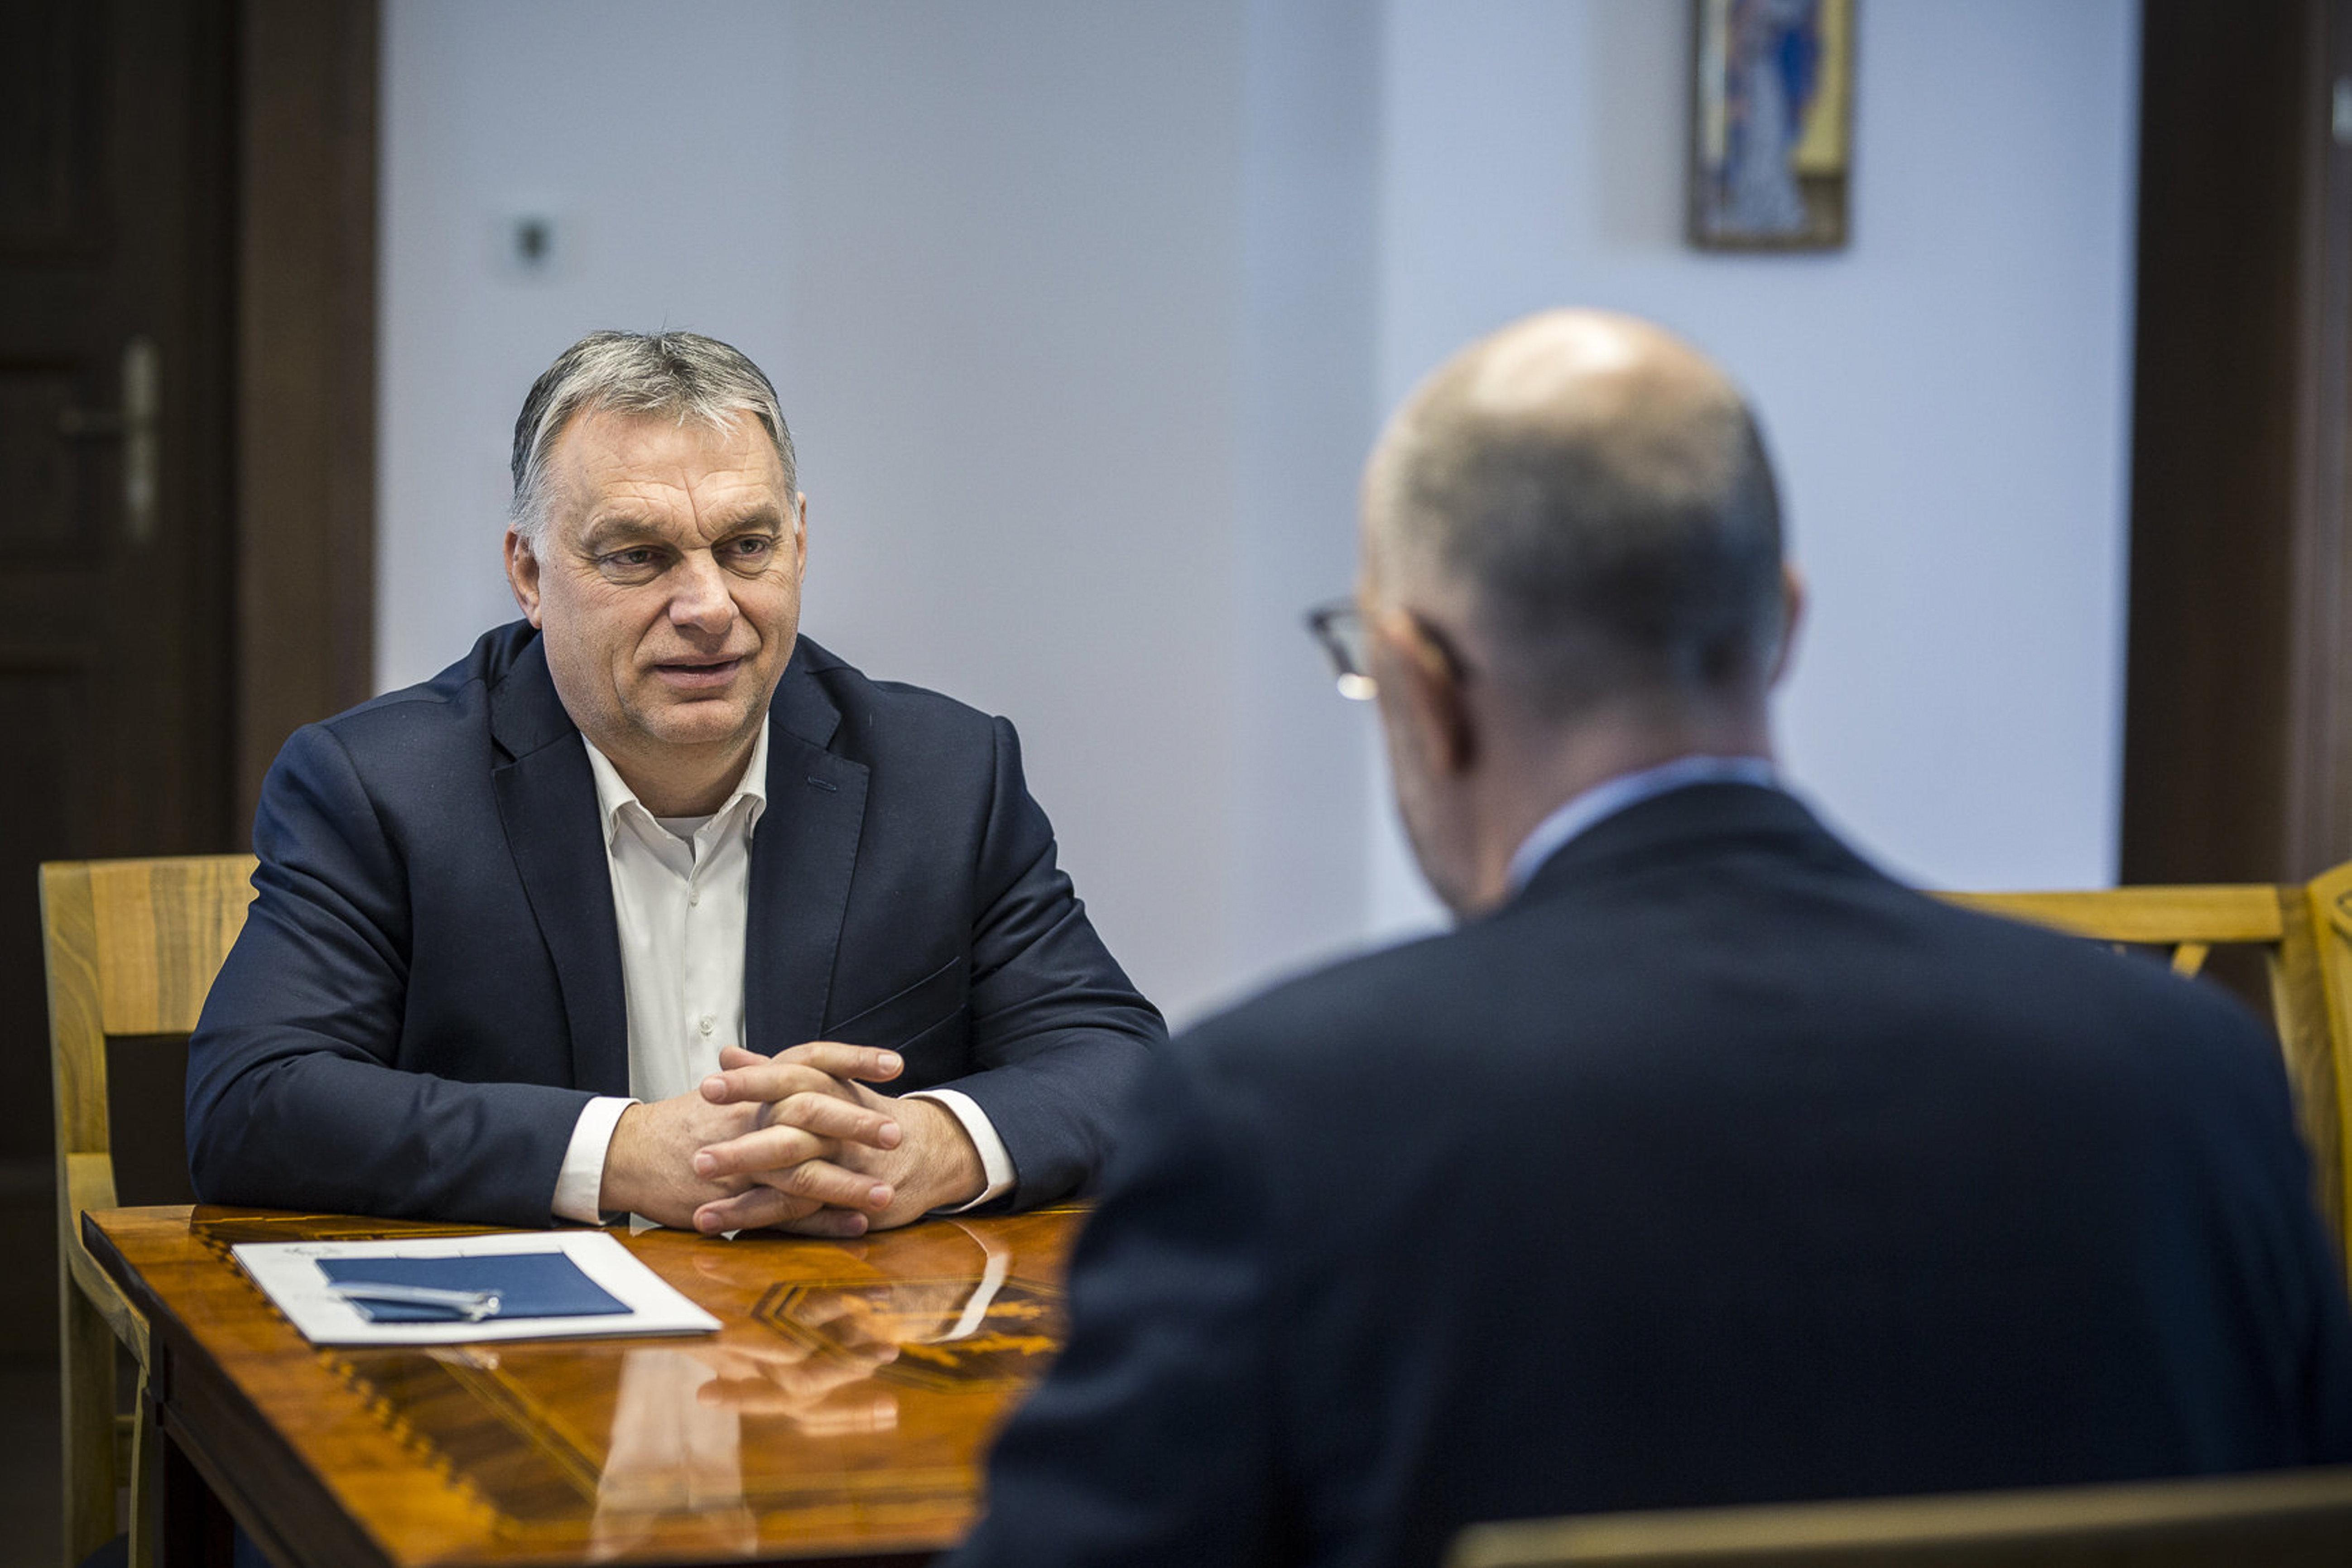 Orbán RMDSZ leader